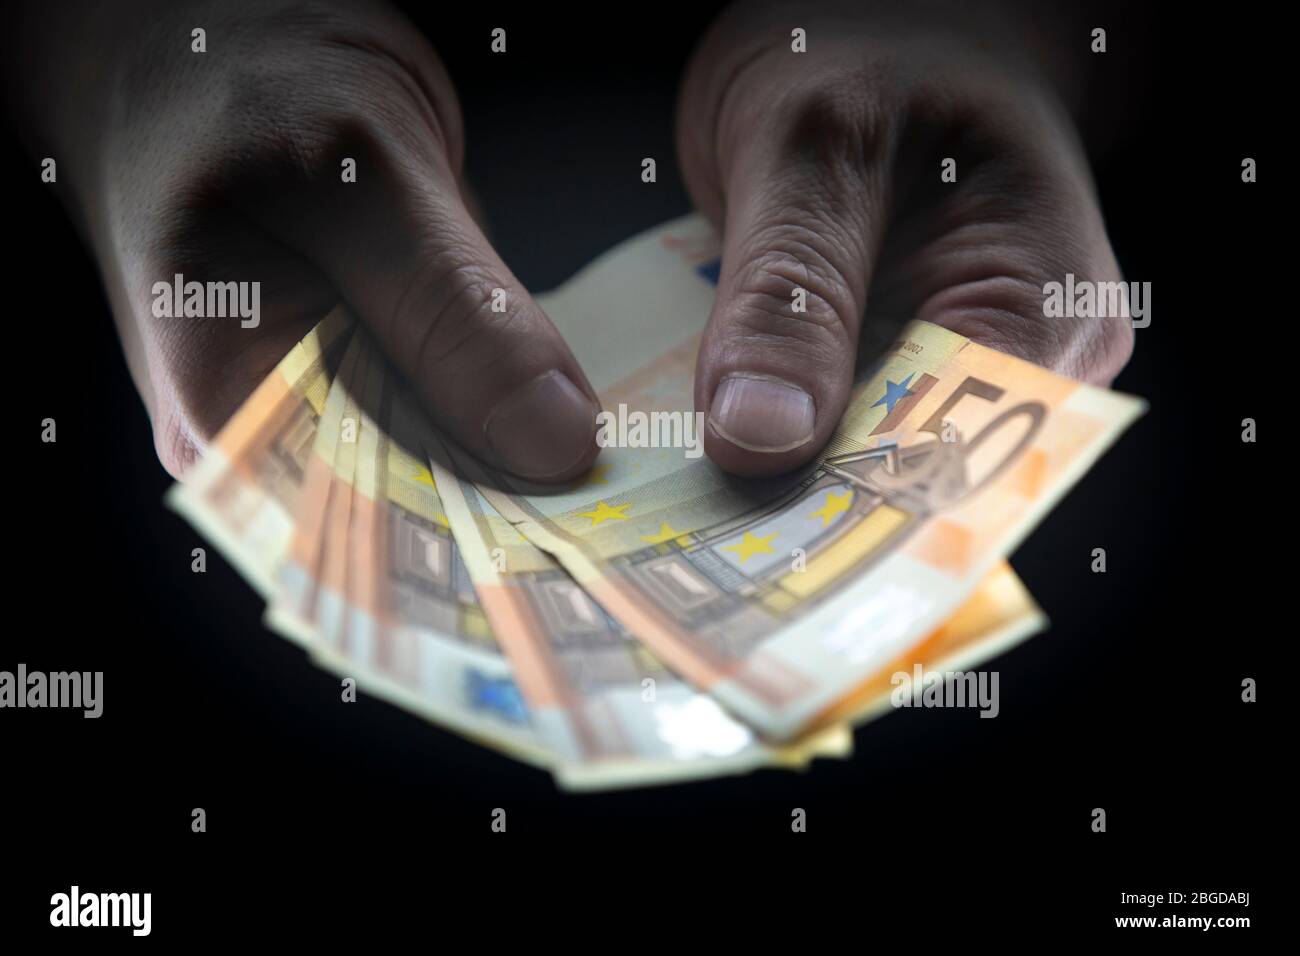 Hombre que sostiene 50 BILLETES DE EUROS en una habitación oscura, dinero ilegal, concepto de avaricia. Foto de stock